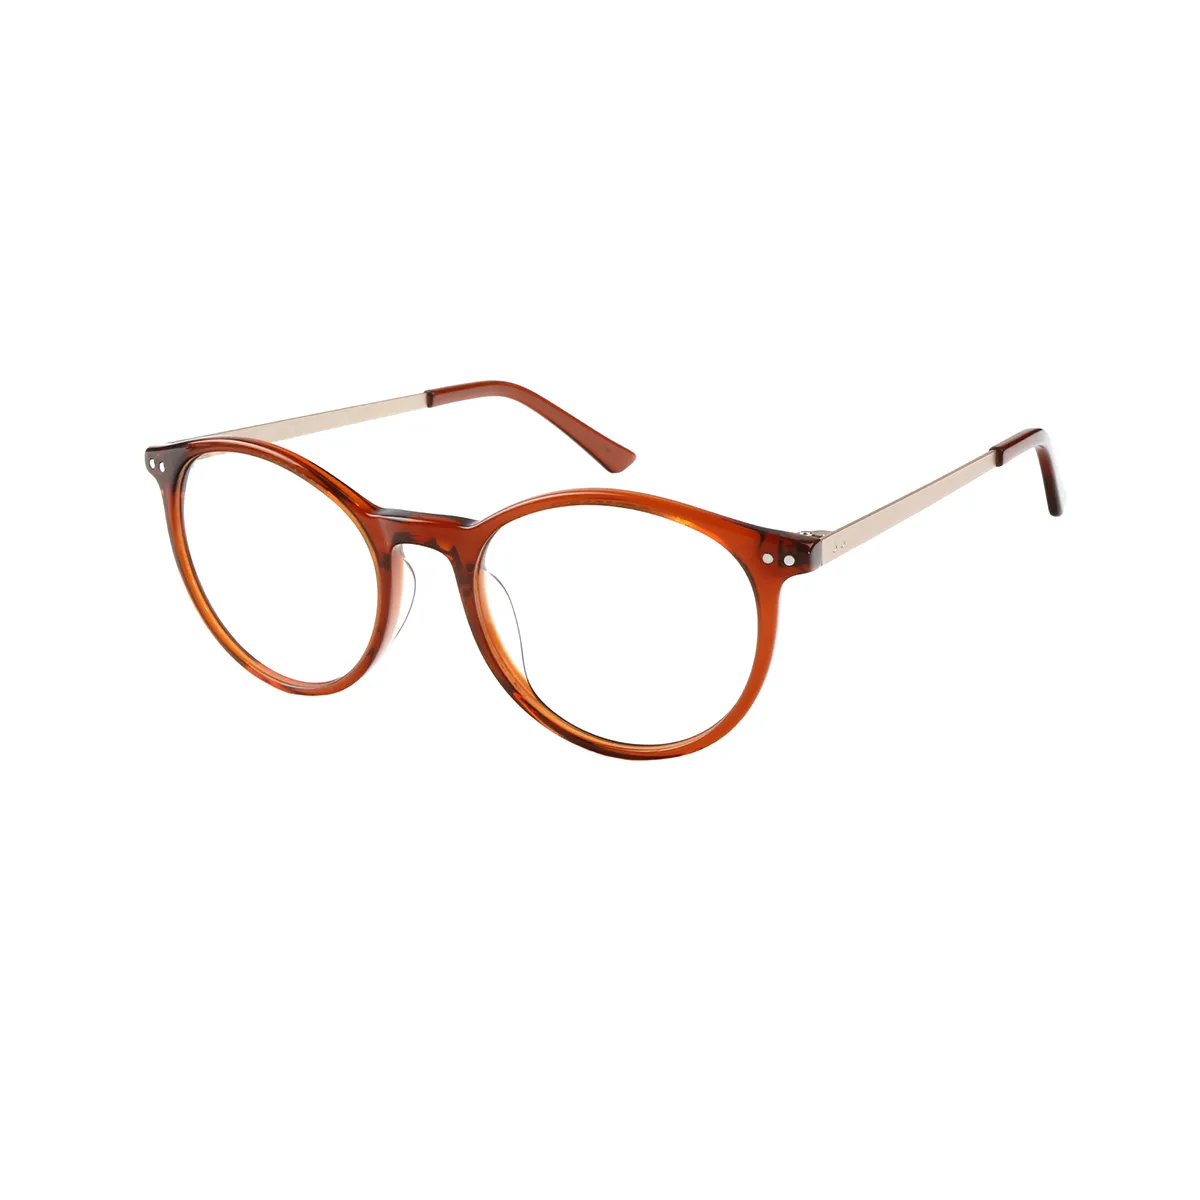 Kenna - Oval  Glasses for Men & Women